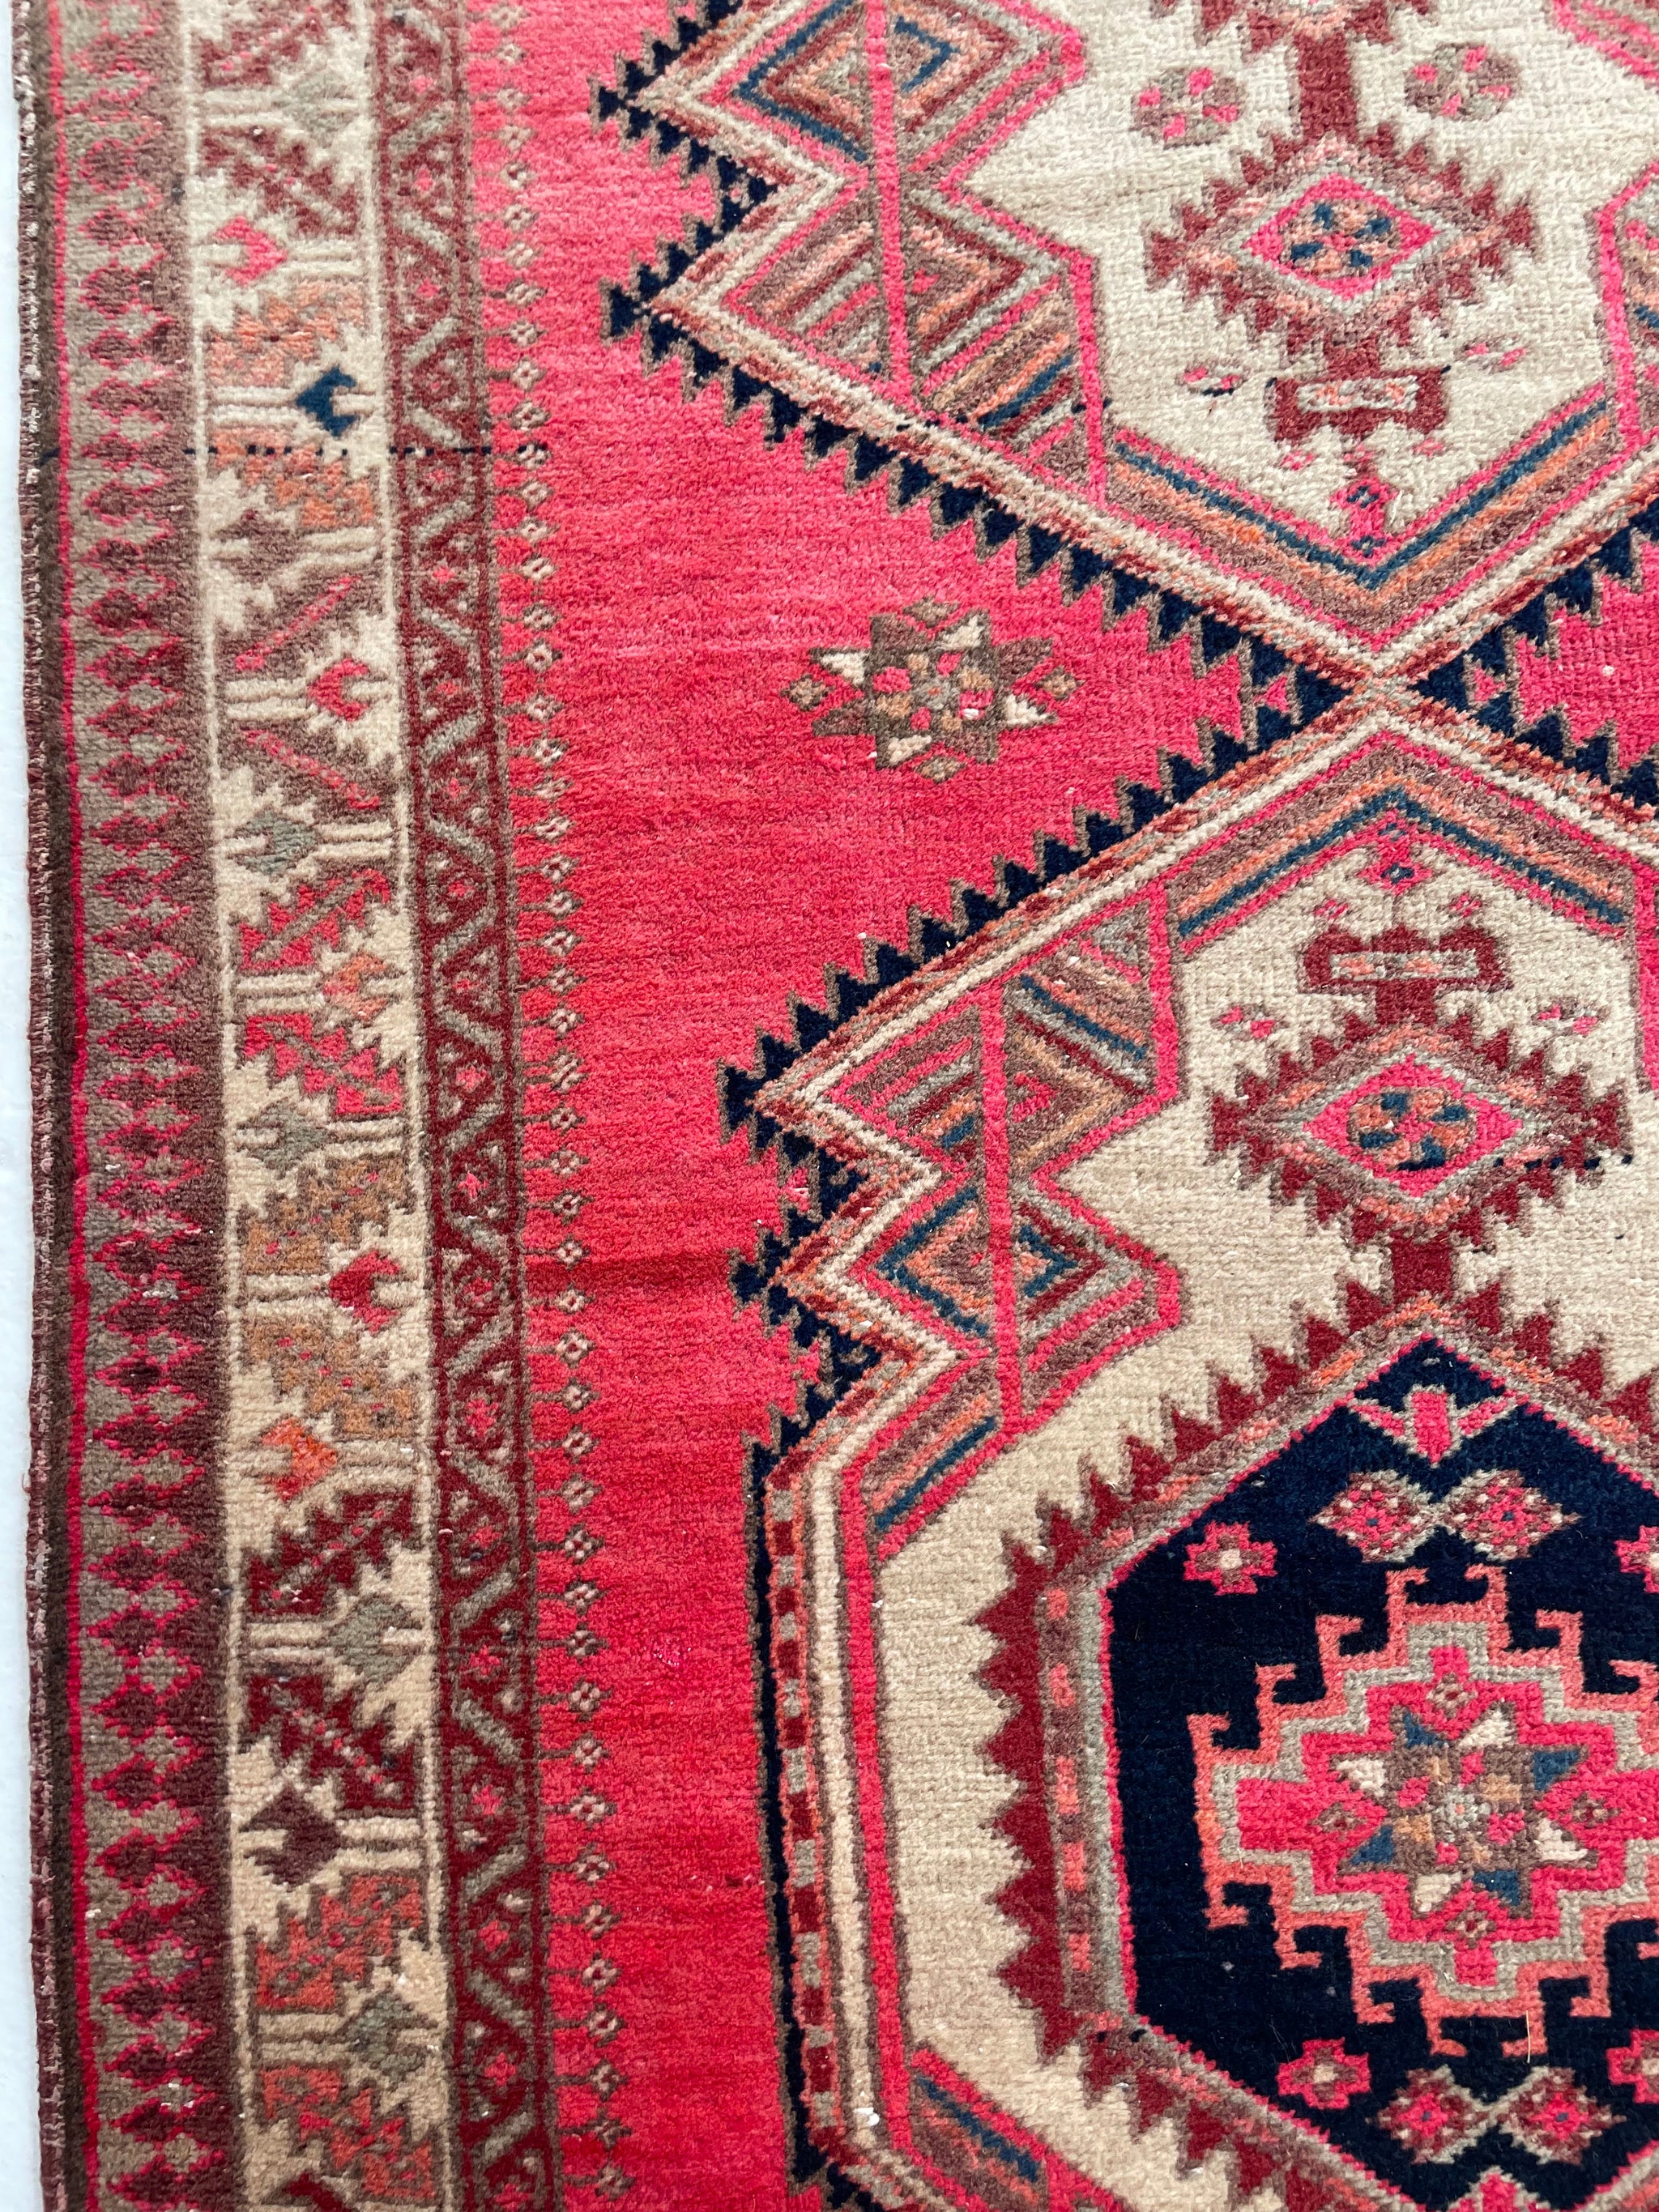 MAGENTA Pink, Copper, Indigo, Purple & More | Vintage Persian